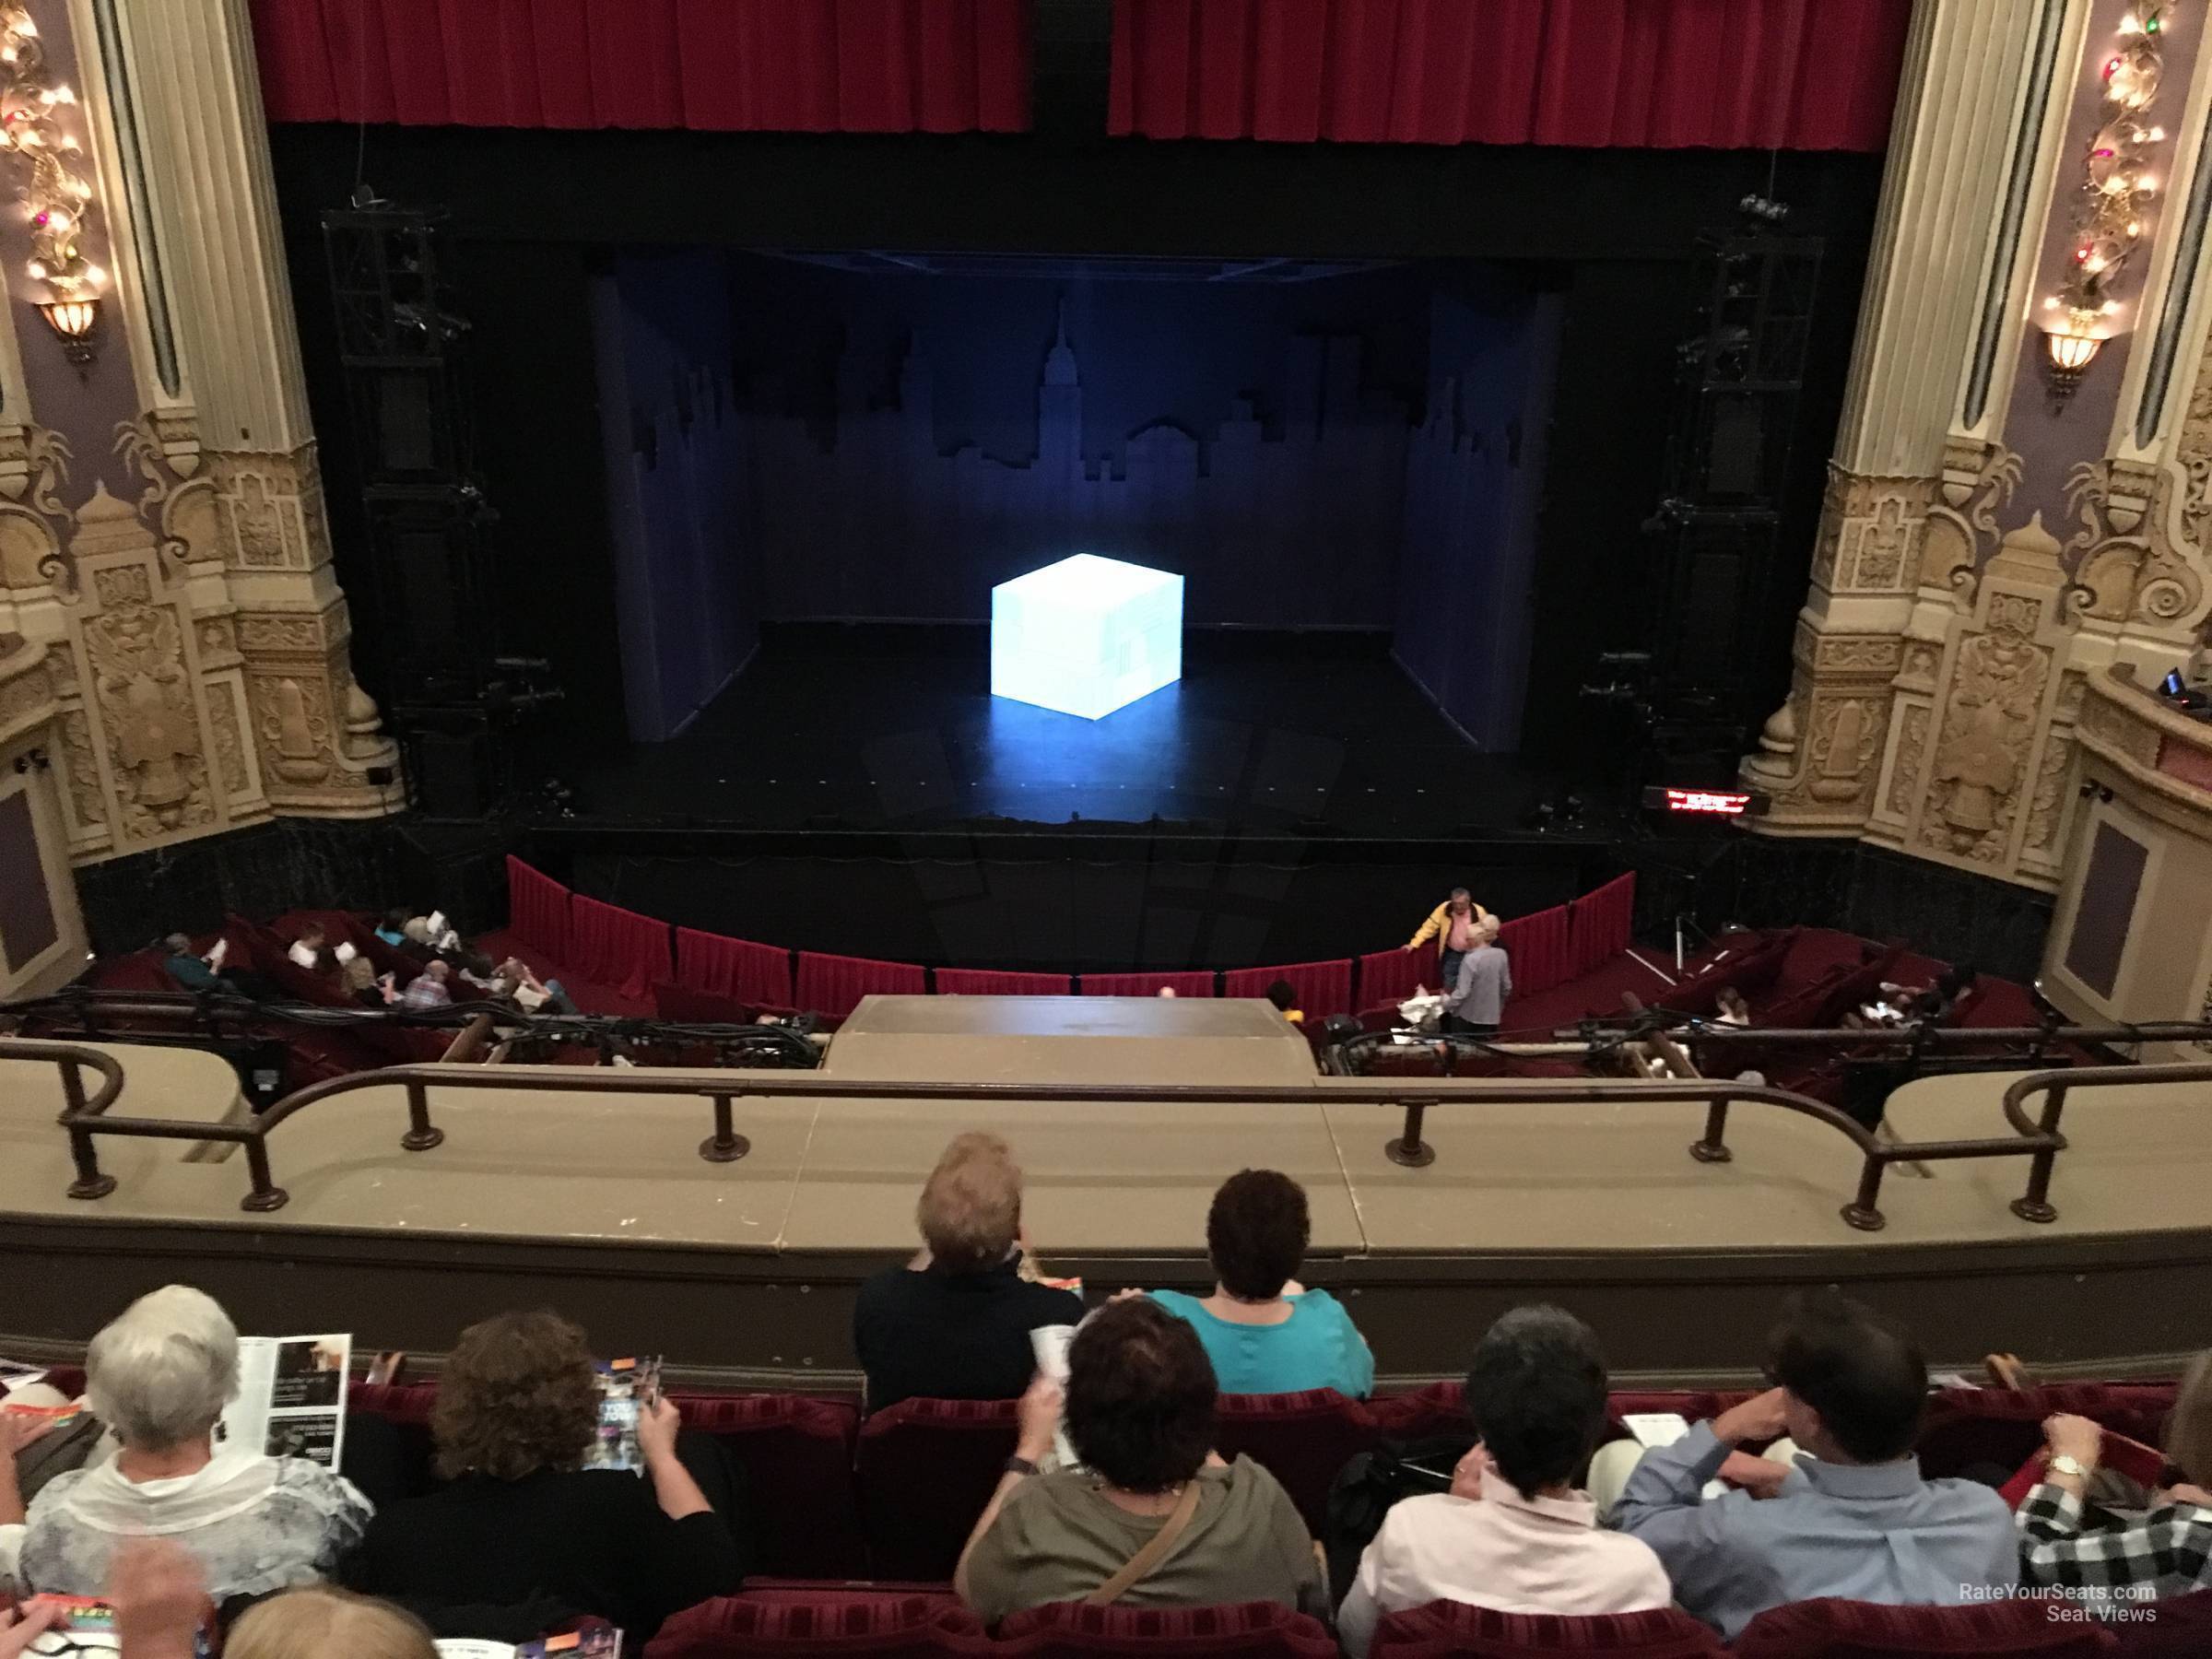 loge center, row d seat view  - nederlander theatre (chicago)